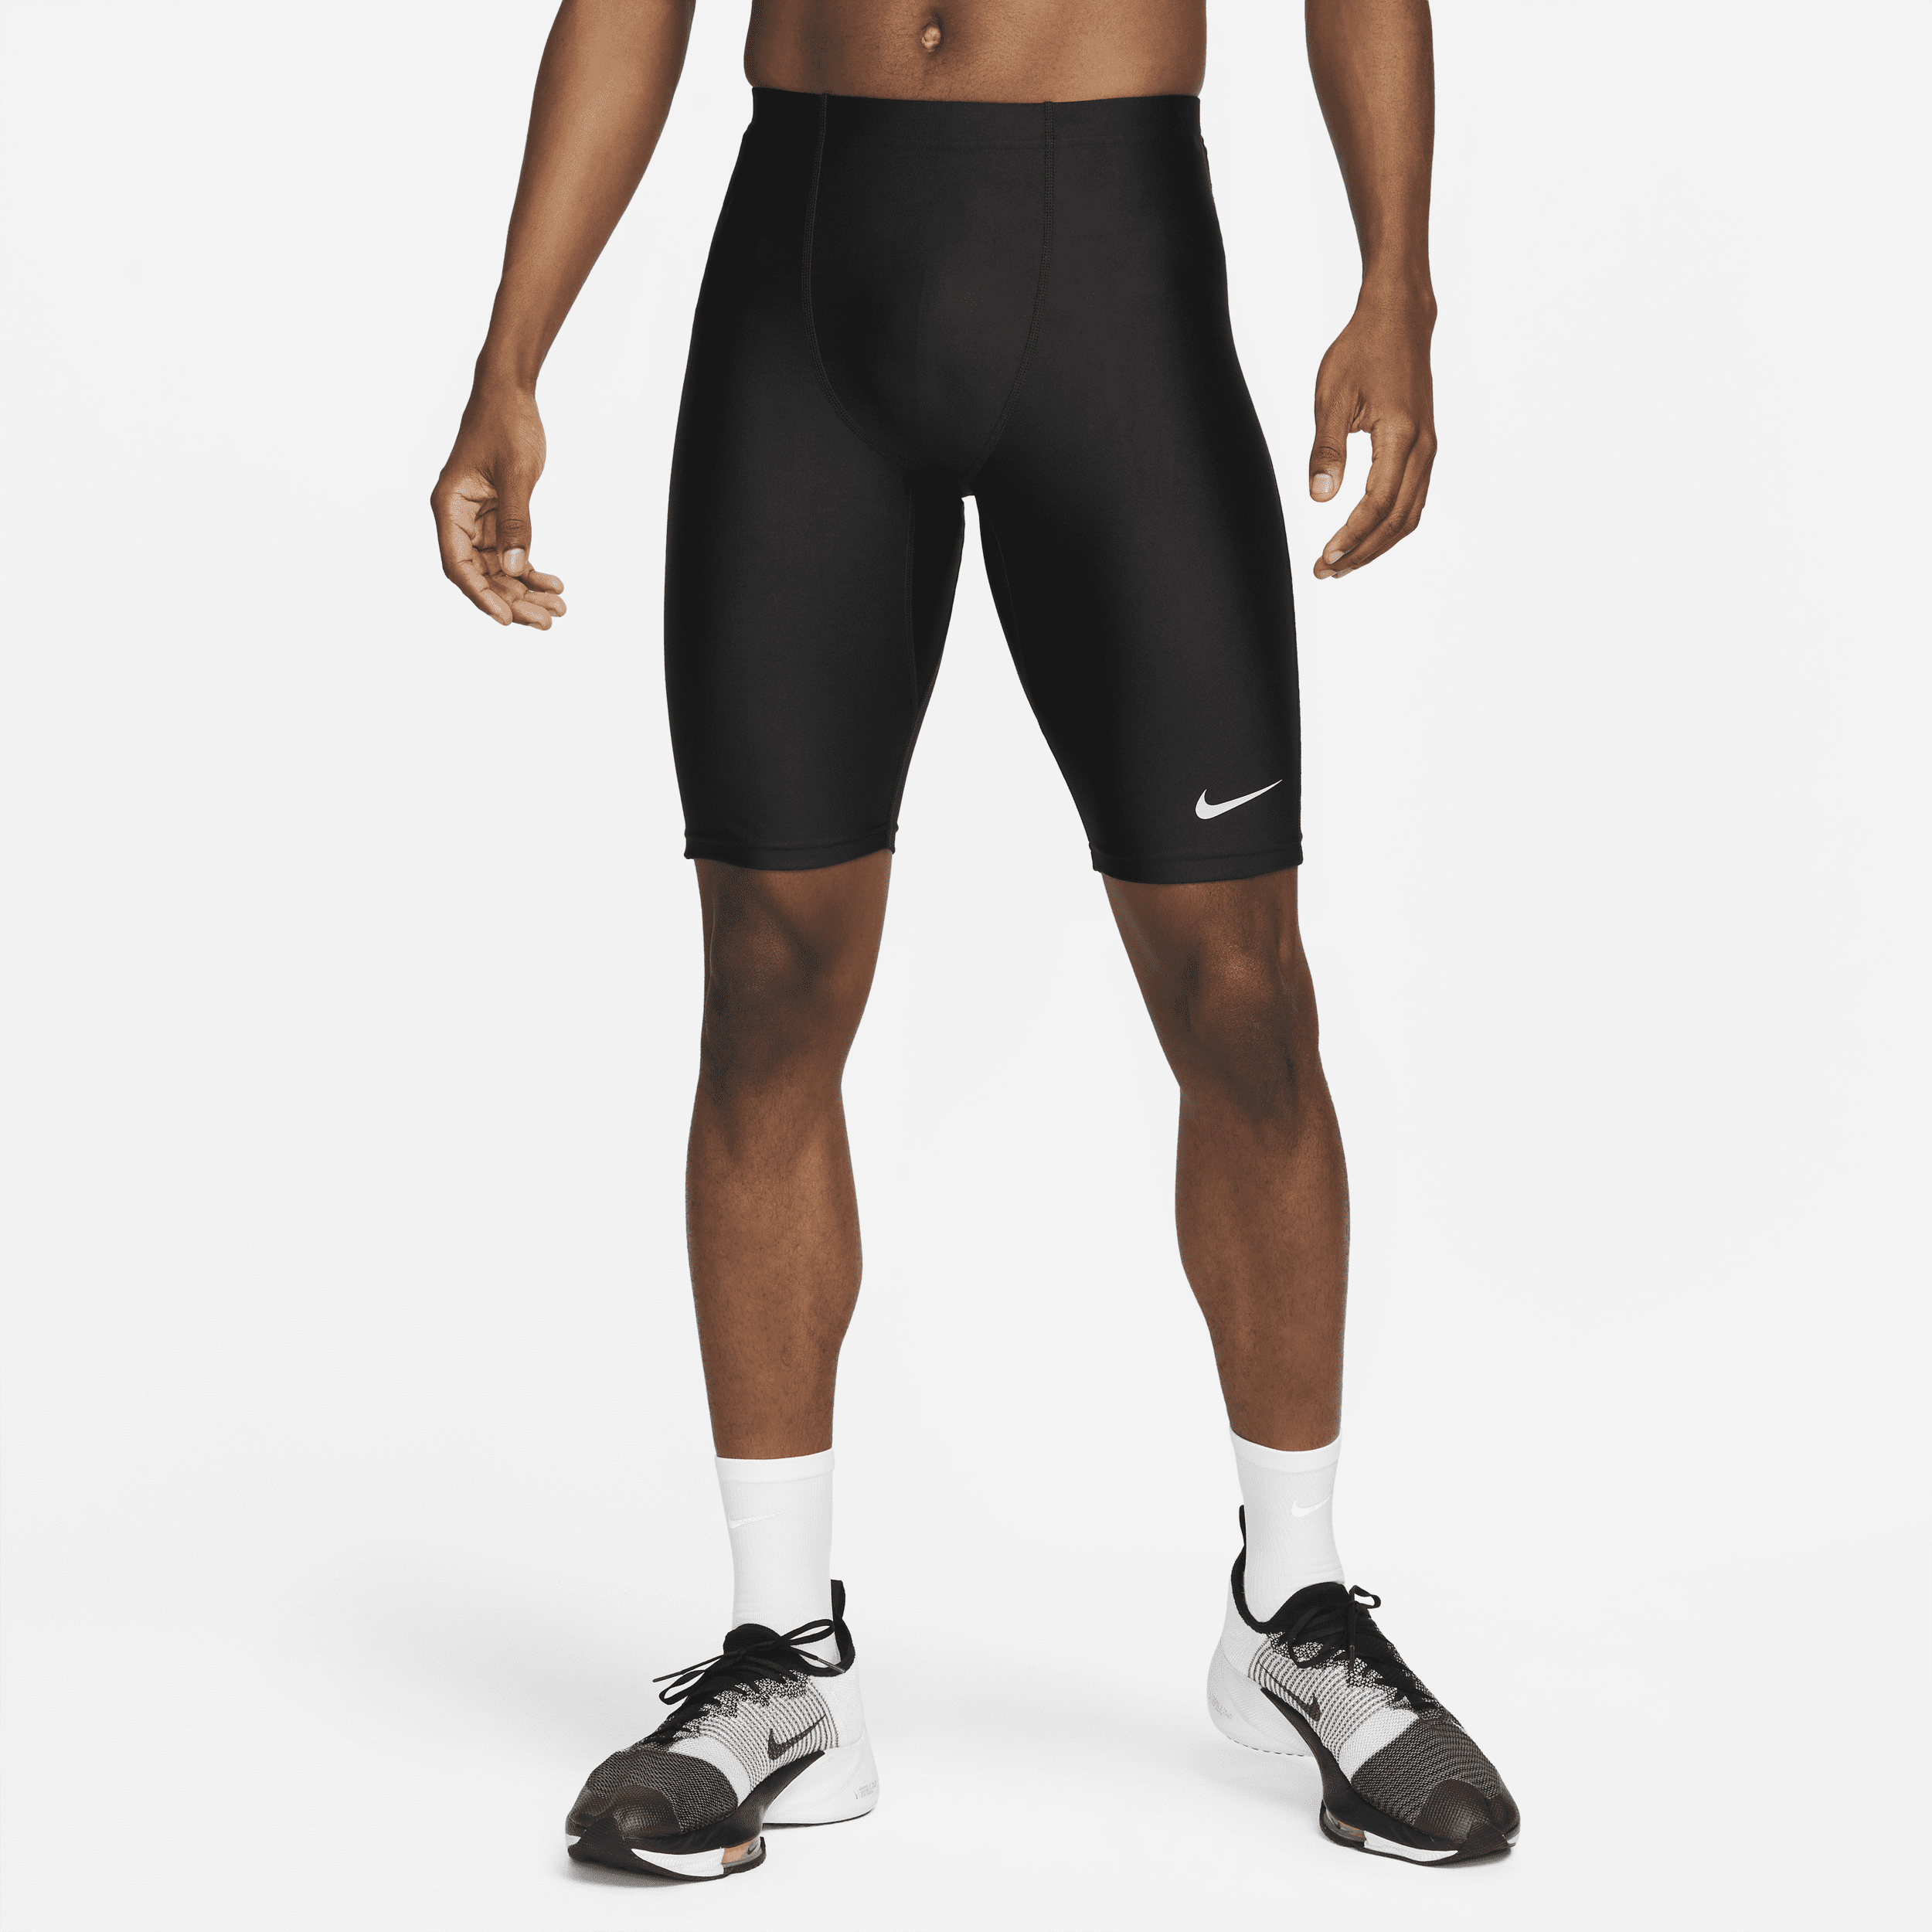 Image of Nike Dri-FIT Fast halflange wedstrijdtights voor heren - Zwart